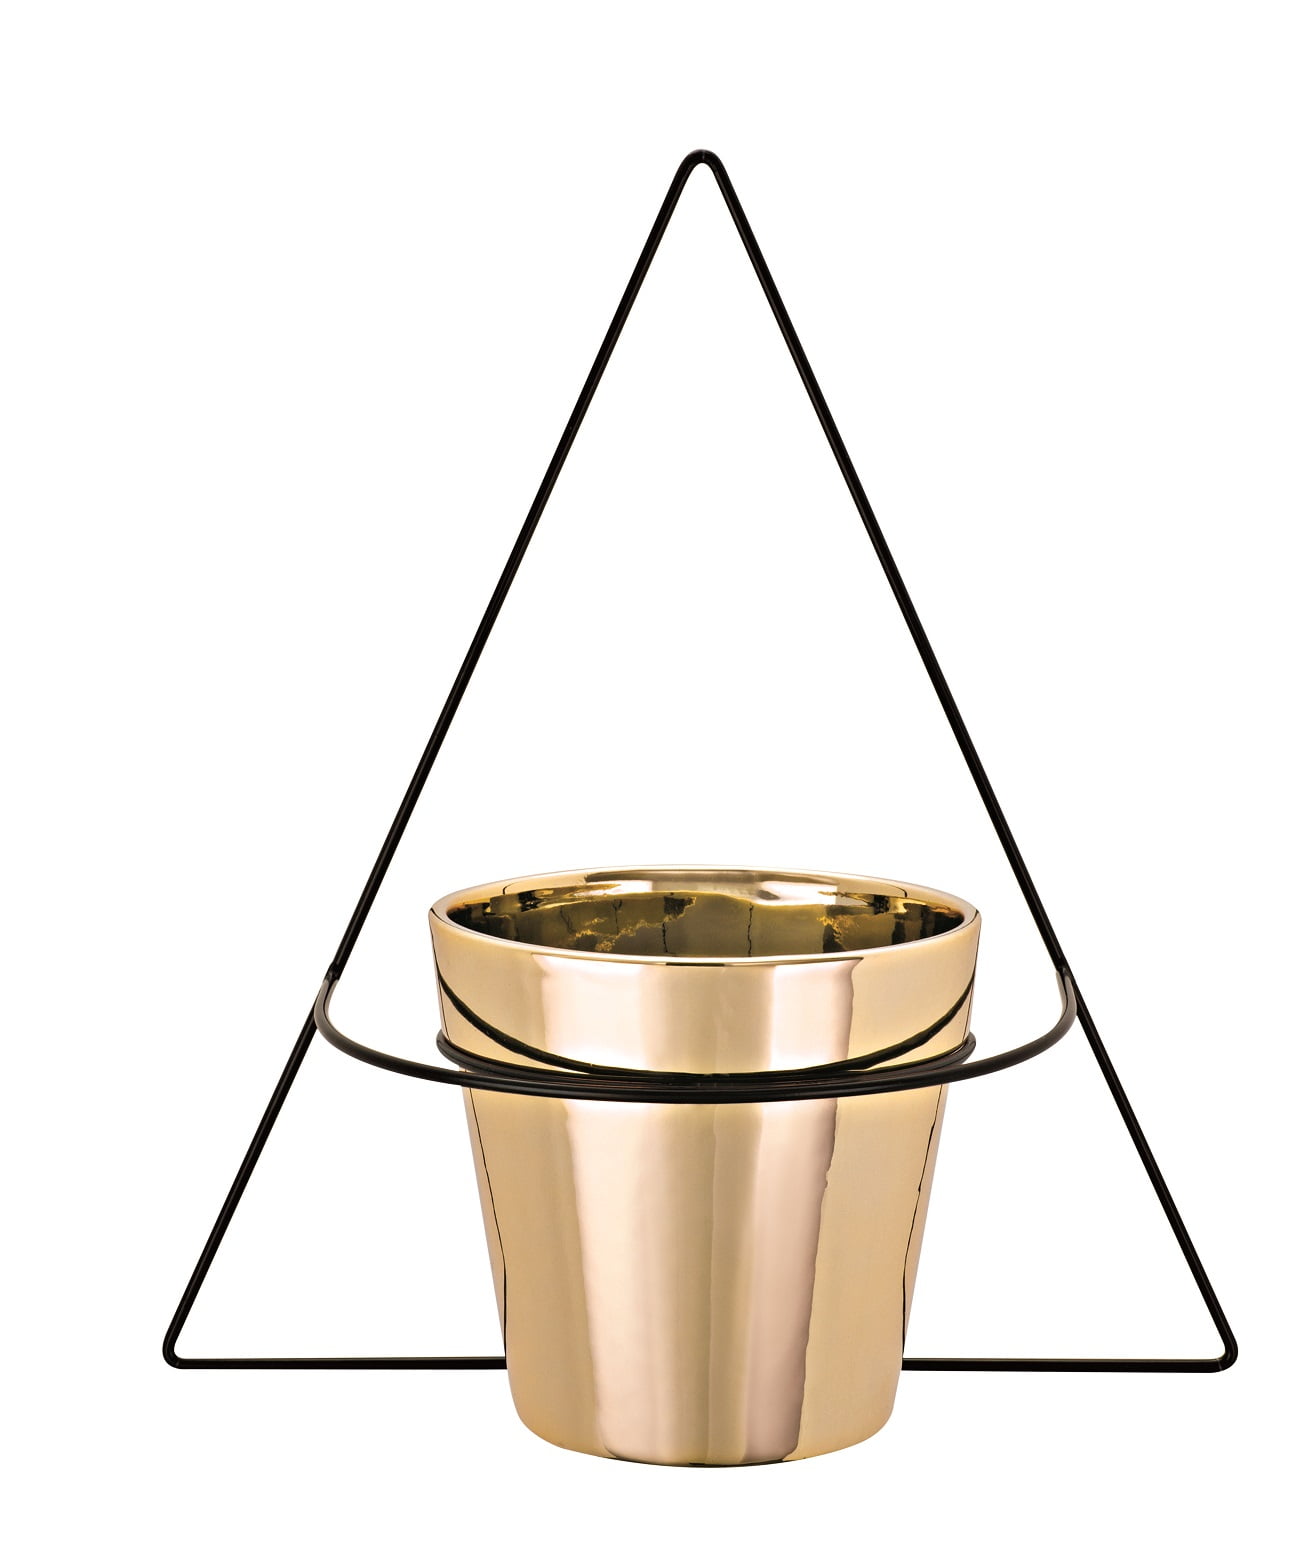 Triângulo Invertido - Vaso com Suporte de Parede - Azzurium